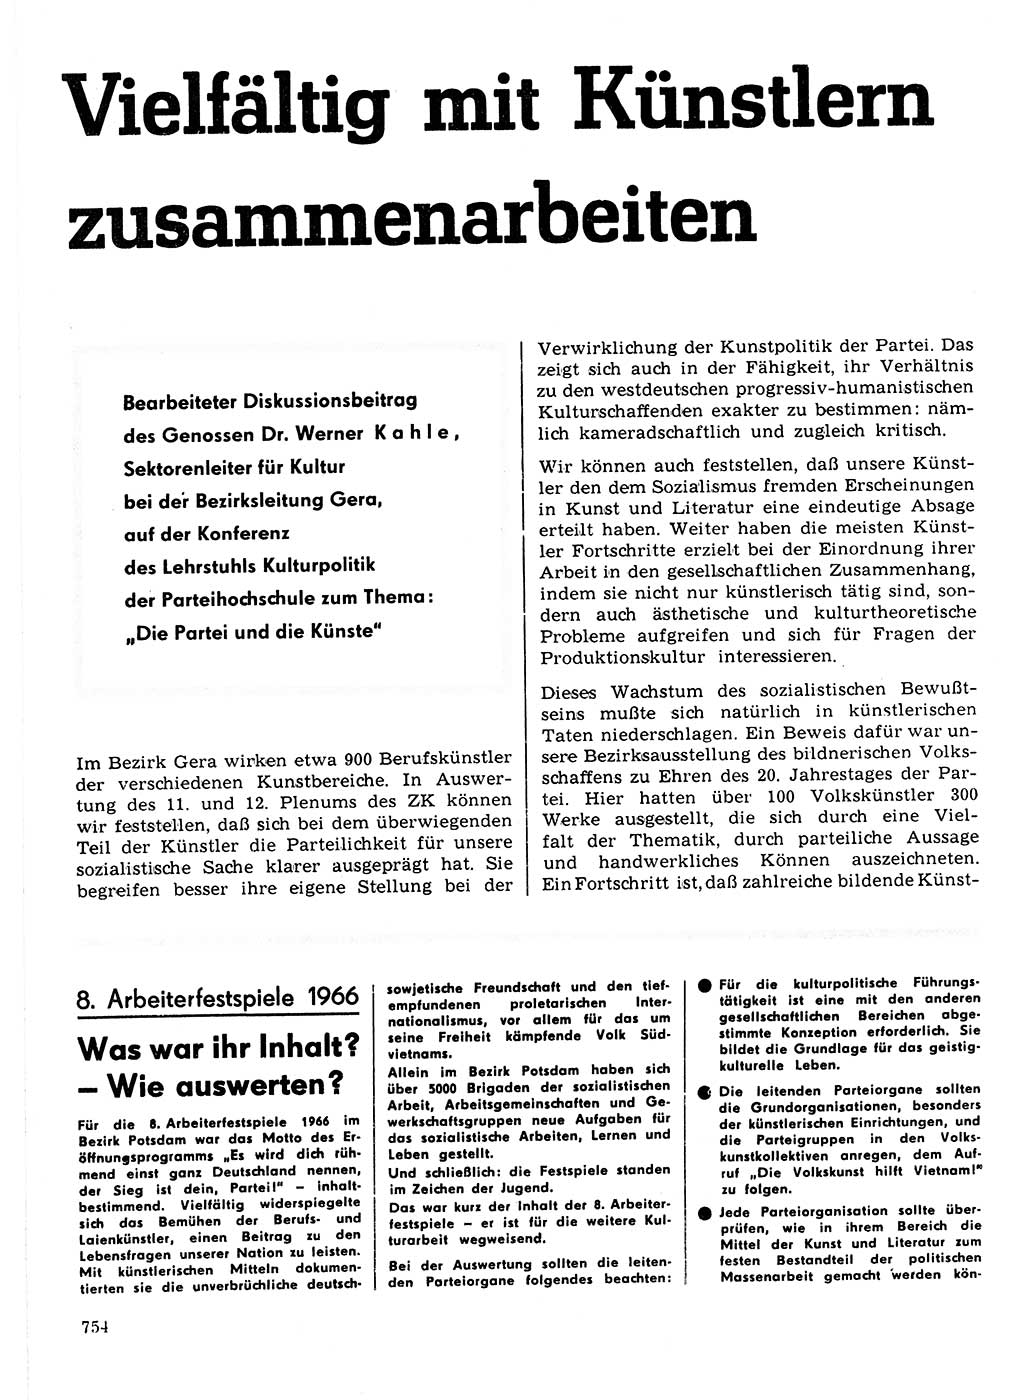 Neuer Weg (NW), Organ des Zentralkomitees (ZK) der SED (Sozialistische Einheitspartei Deutschlands) für Fragen des Parteilebens, 21. Jahrgang [Deutsche Demokratische Republik (DDR)] 1966, Seite 754 (NW ZK SED DDR 1966, S. 754)